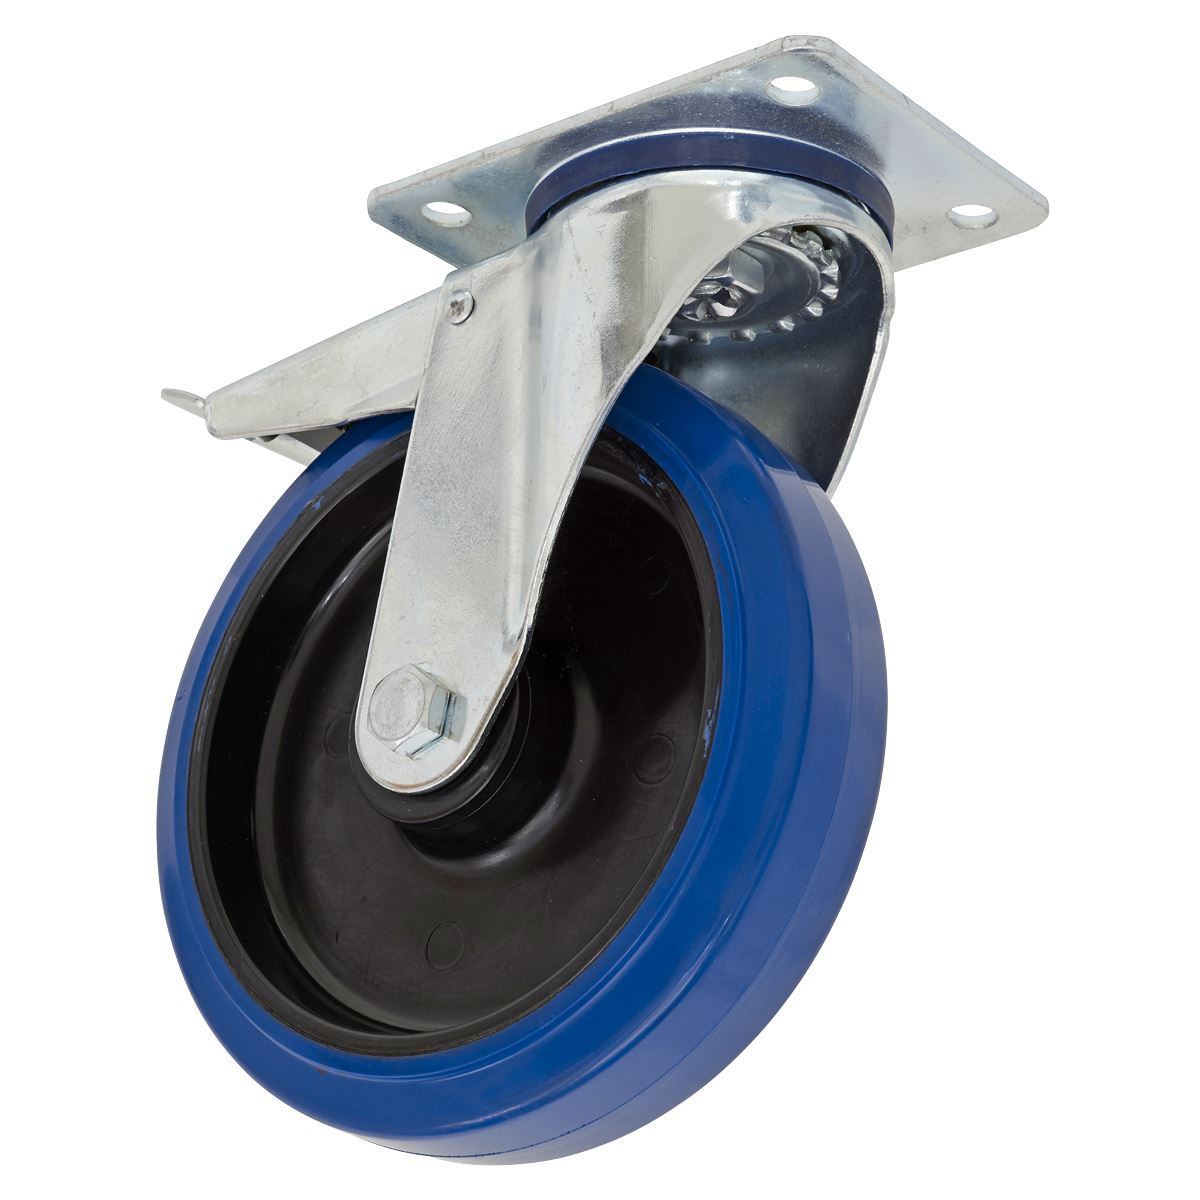 Sealey Heavy-Duty Blue Elastic Rubber Swivel Castor Wheel With Total Lock Ø100mm - Trade